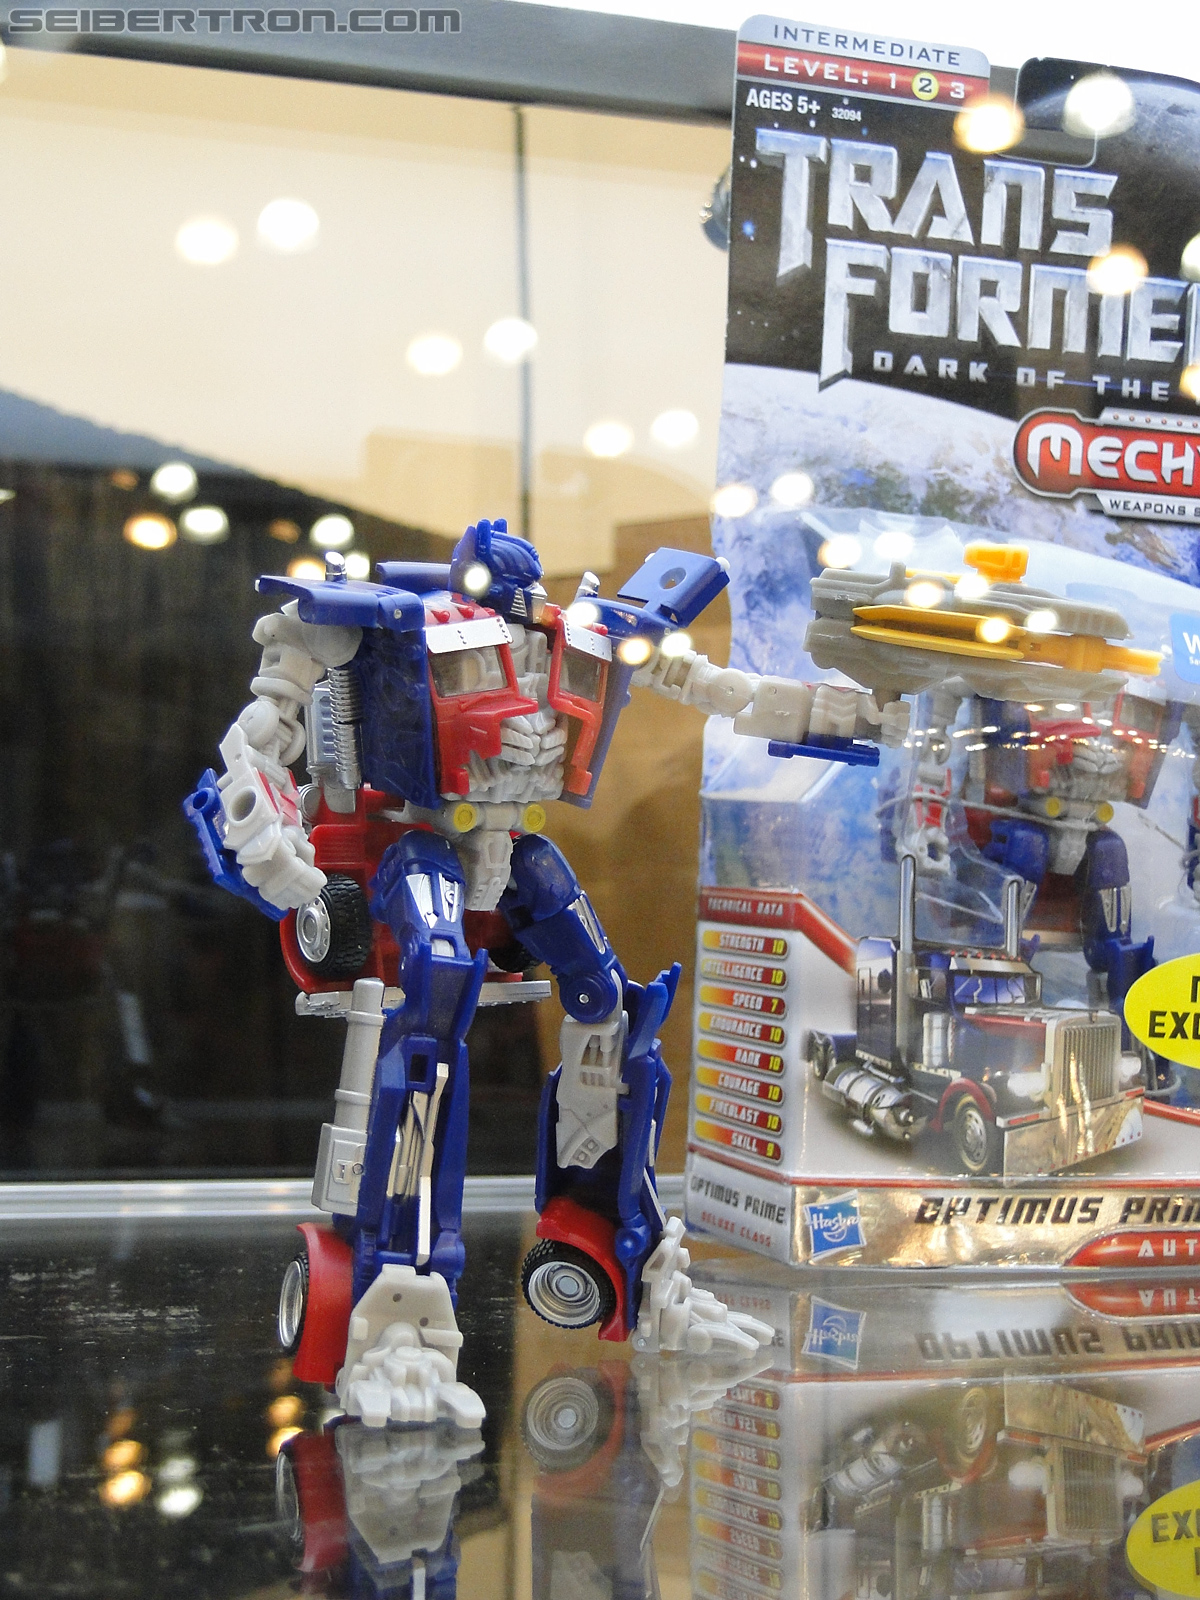 Botcon 2011 - Transformers Retail Exclusives Display Area